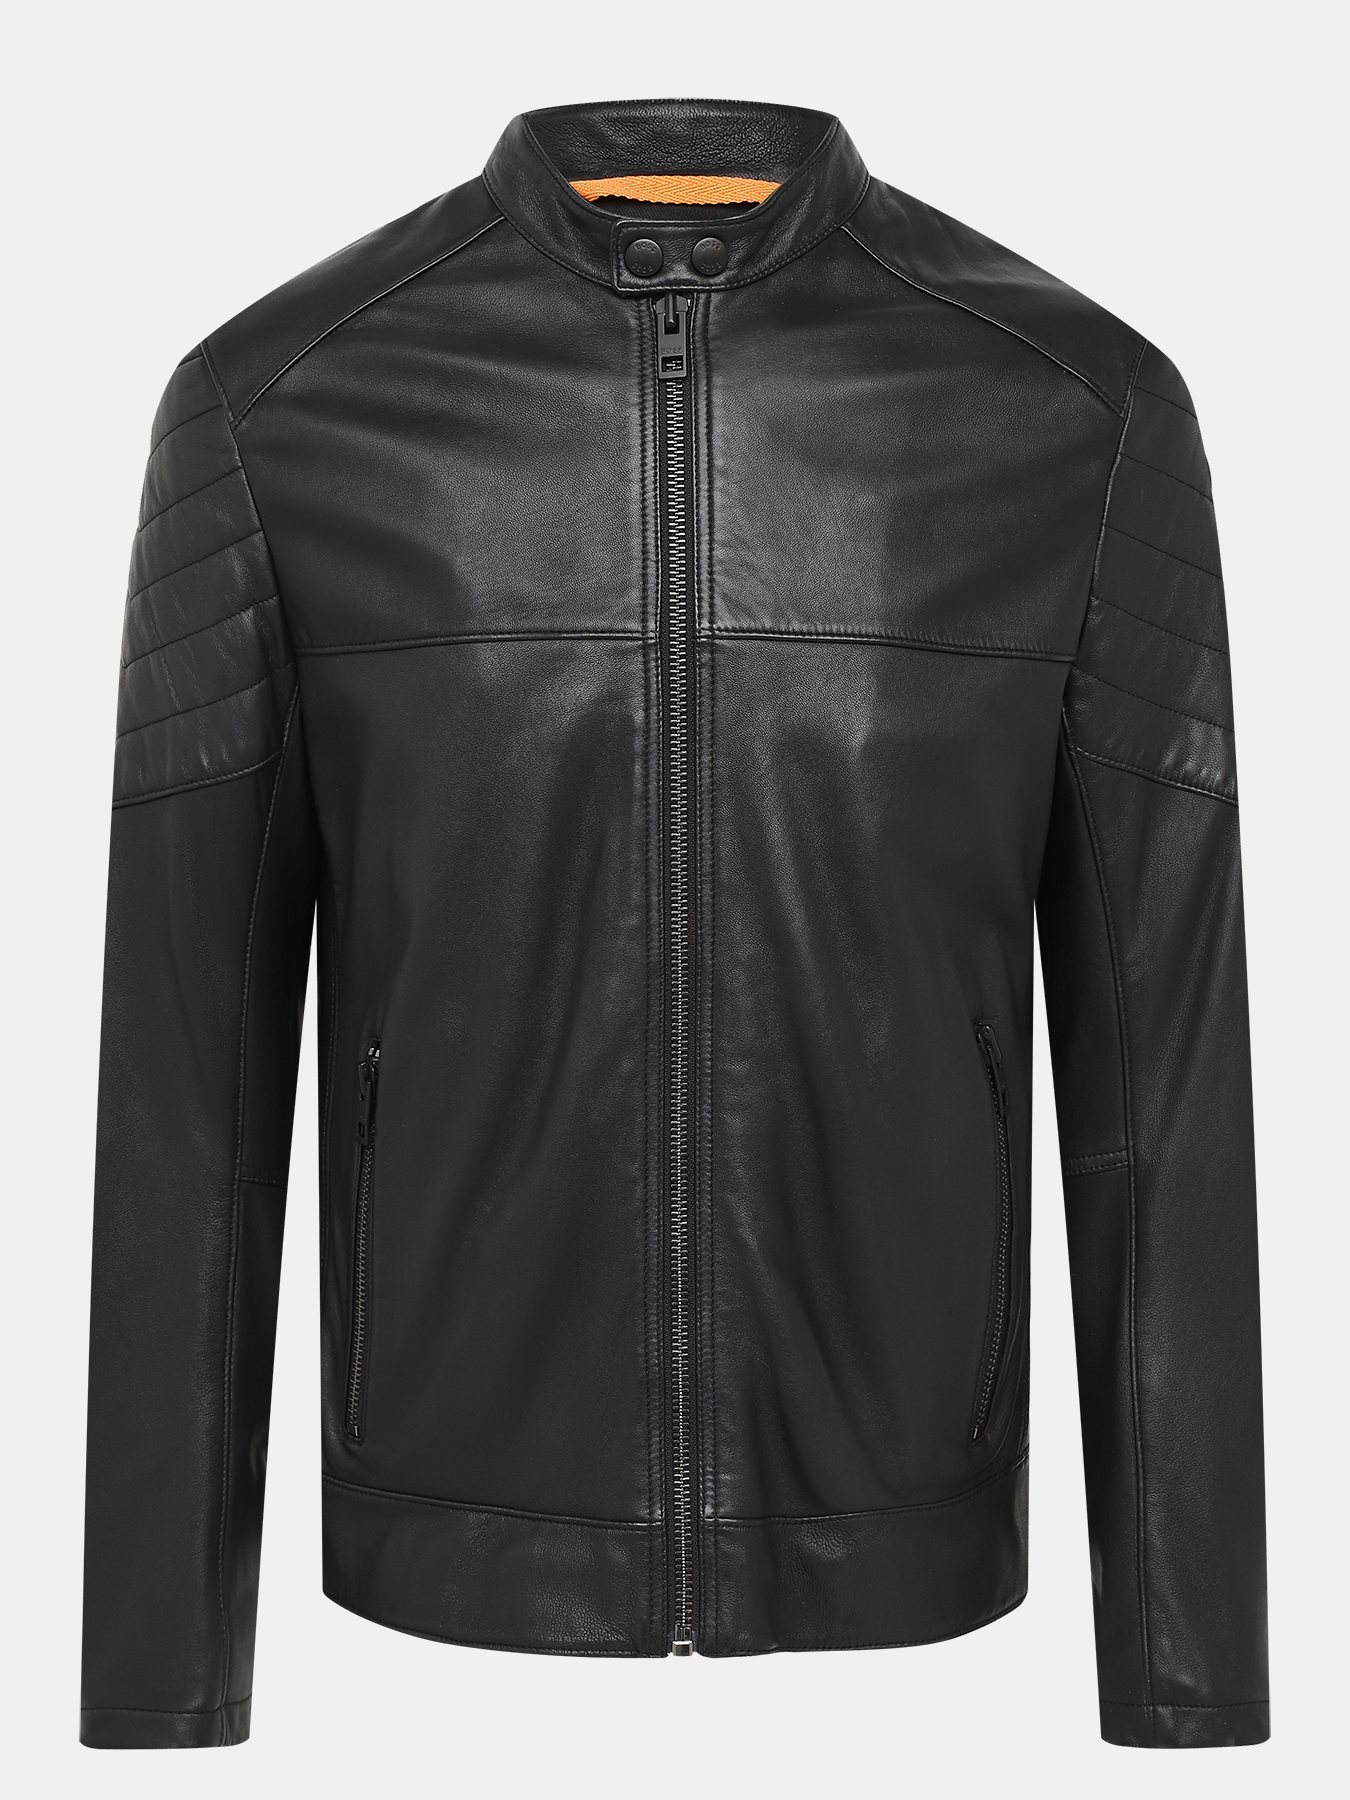 Кожаная куртка Joset BOSS 432922-025, цвет черный, размер 48